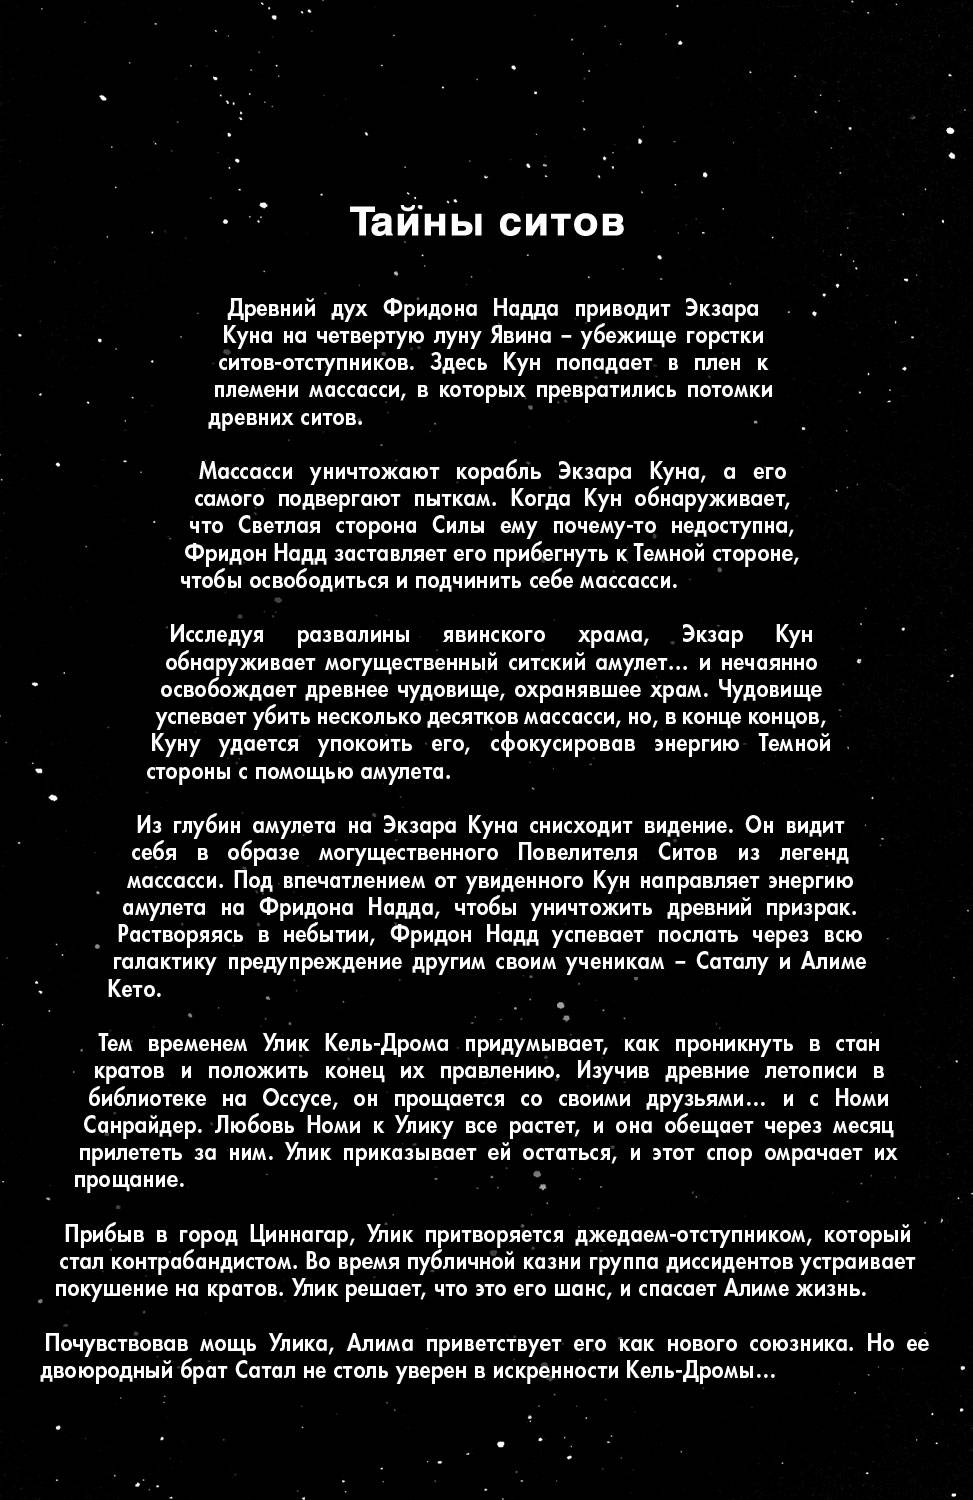 Звездные Войны: Сказания о Джедаях: Темные Повелители Ситов №5 онлайн